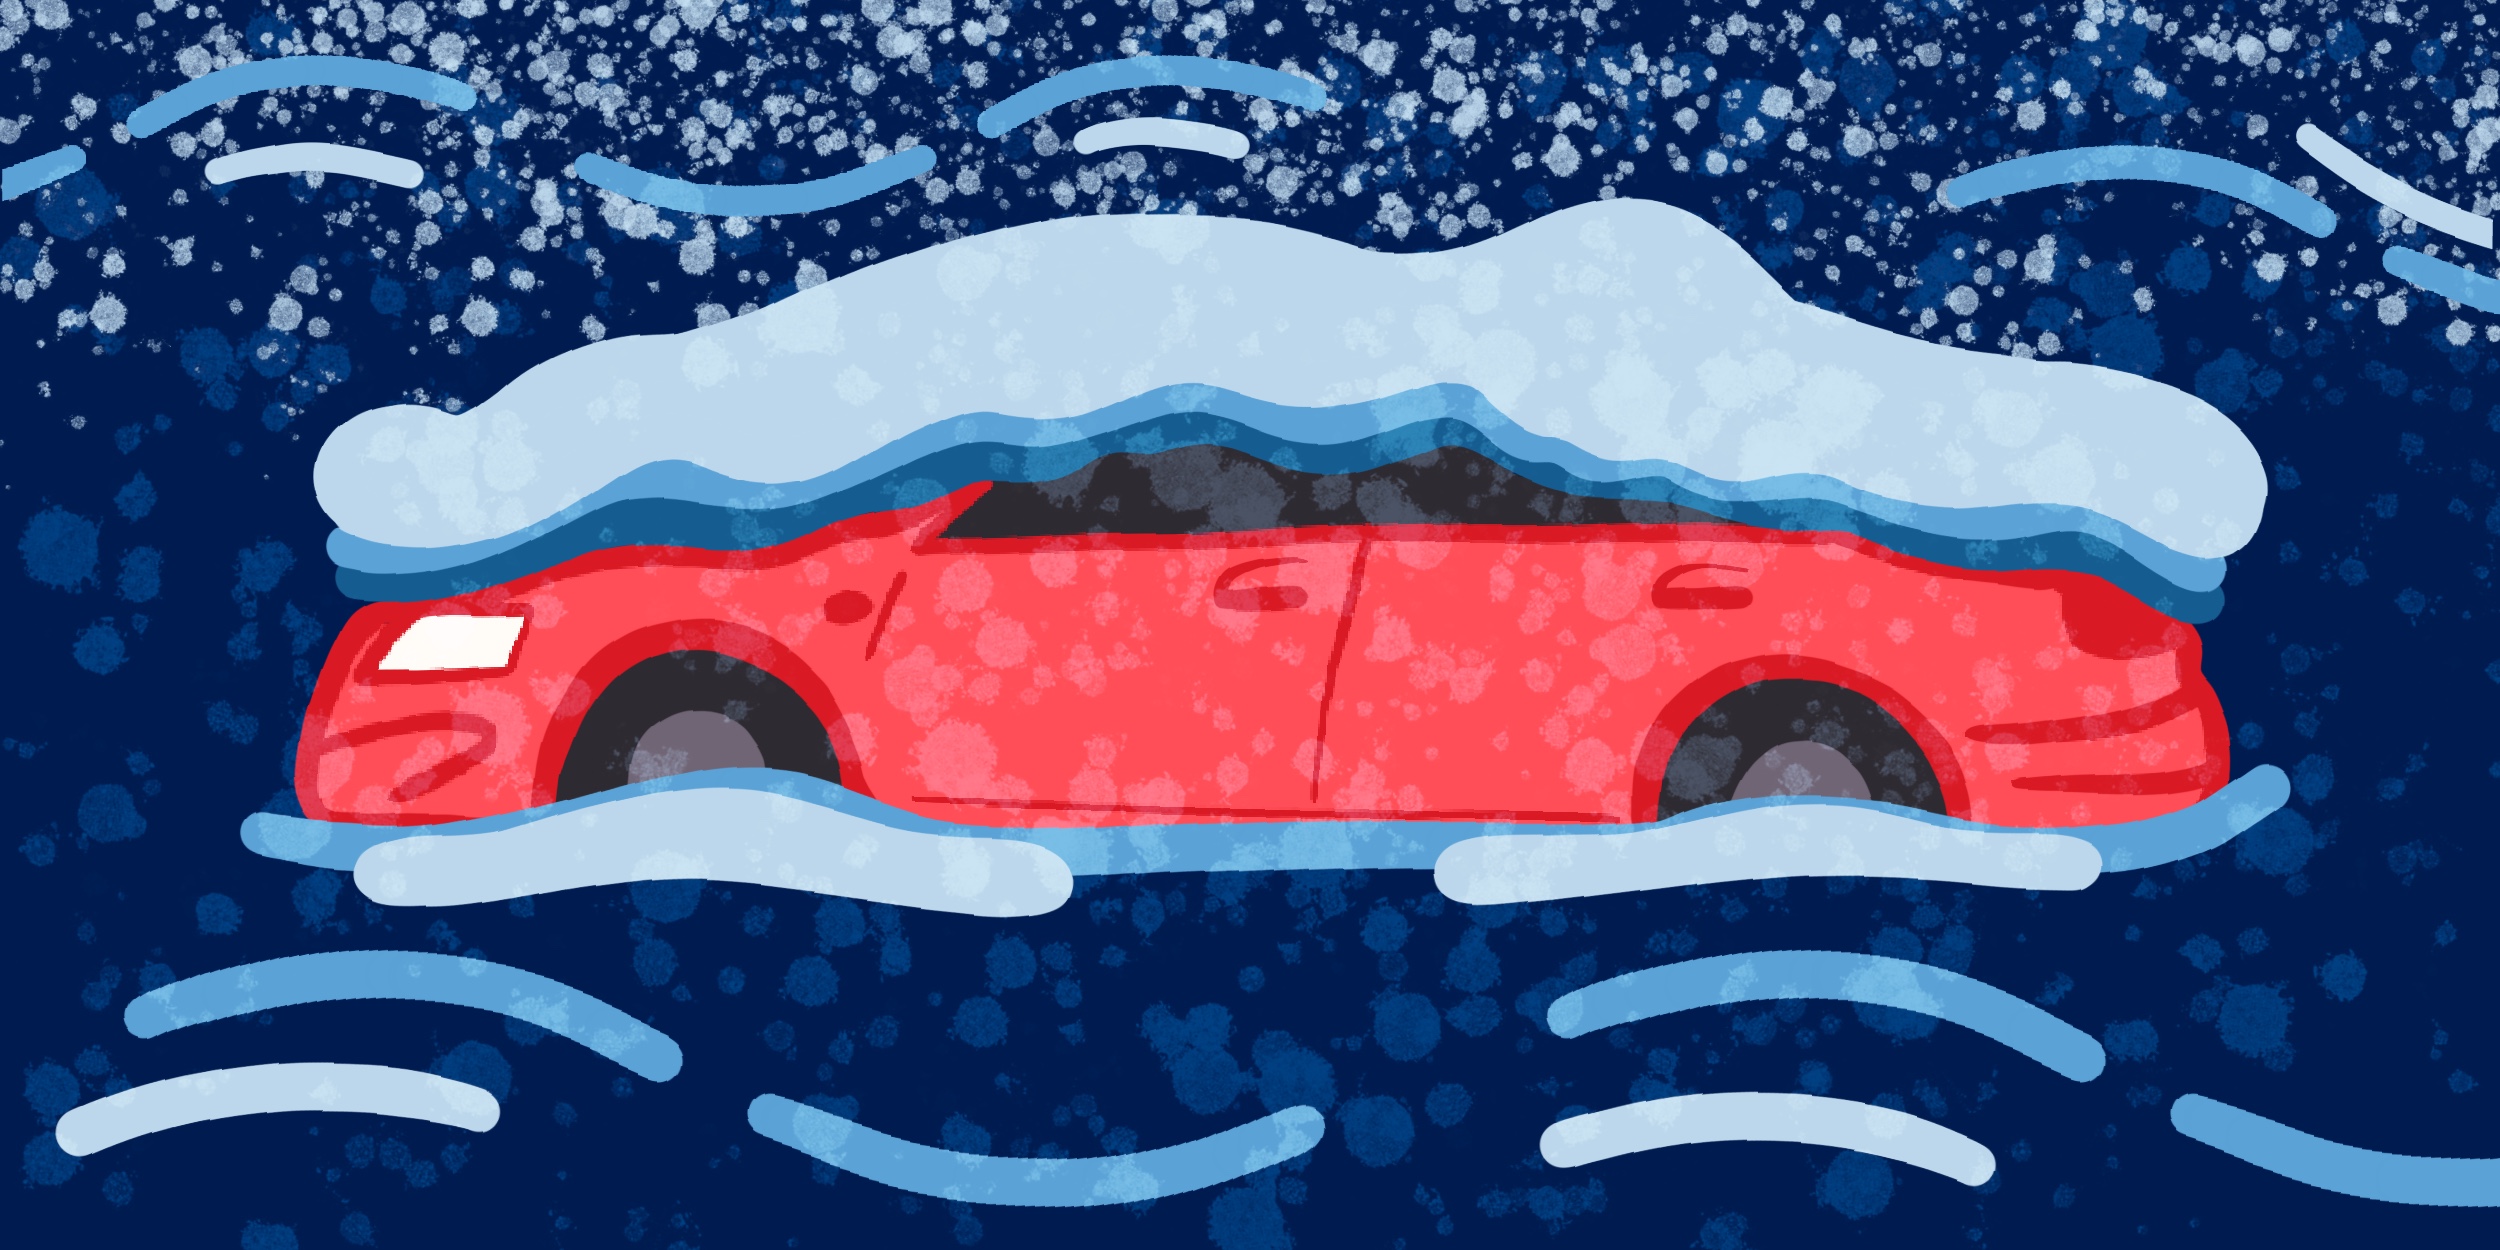 Как выбраться, если автомобиль застрял в снегу? Эффективные способы